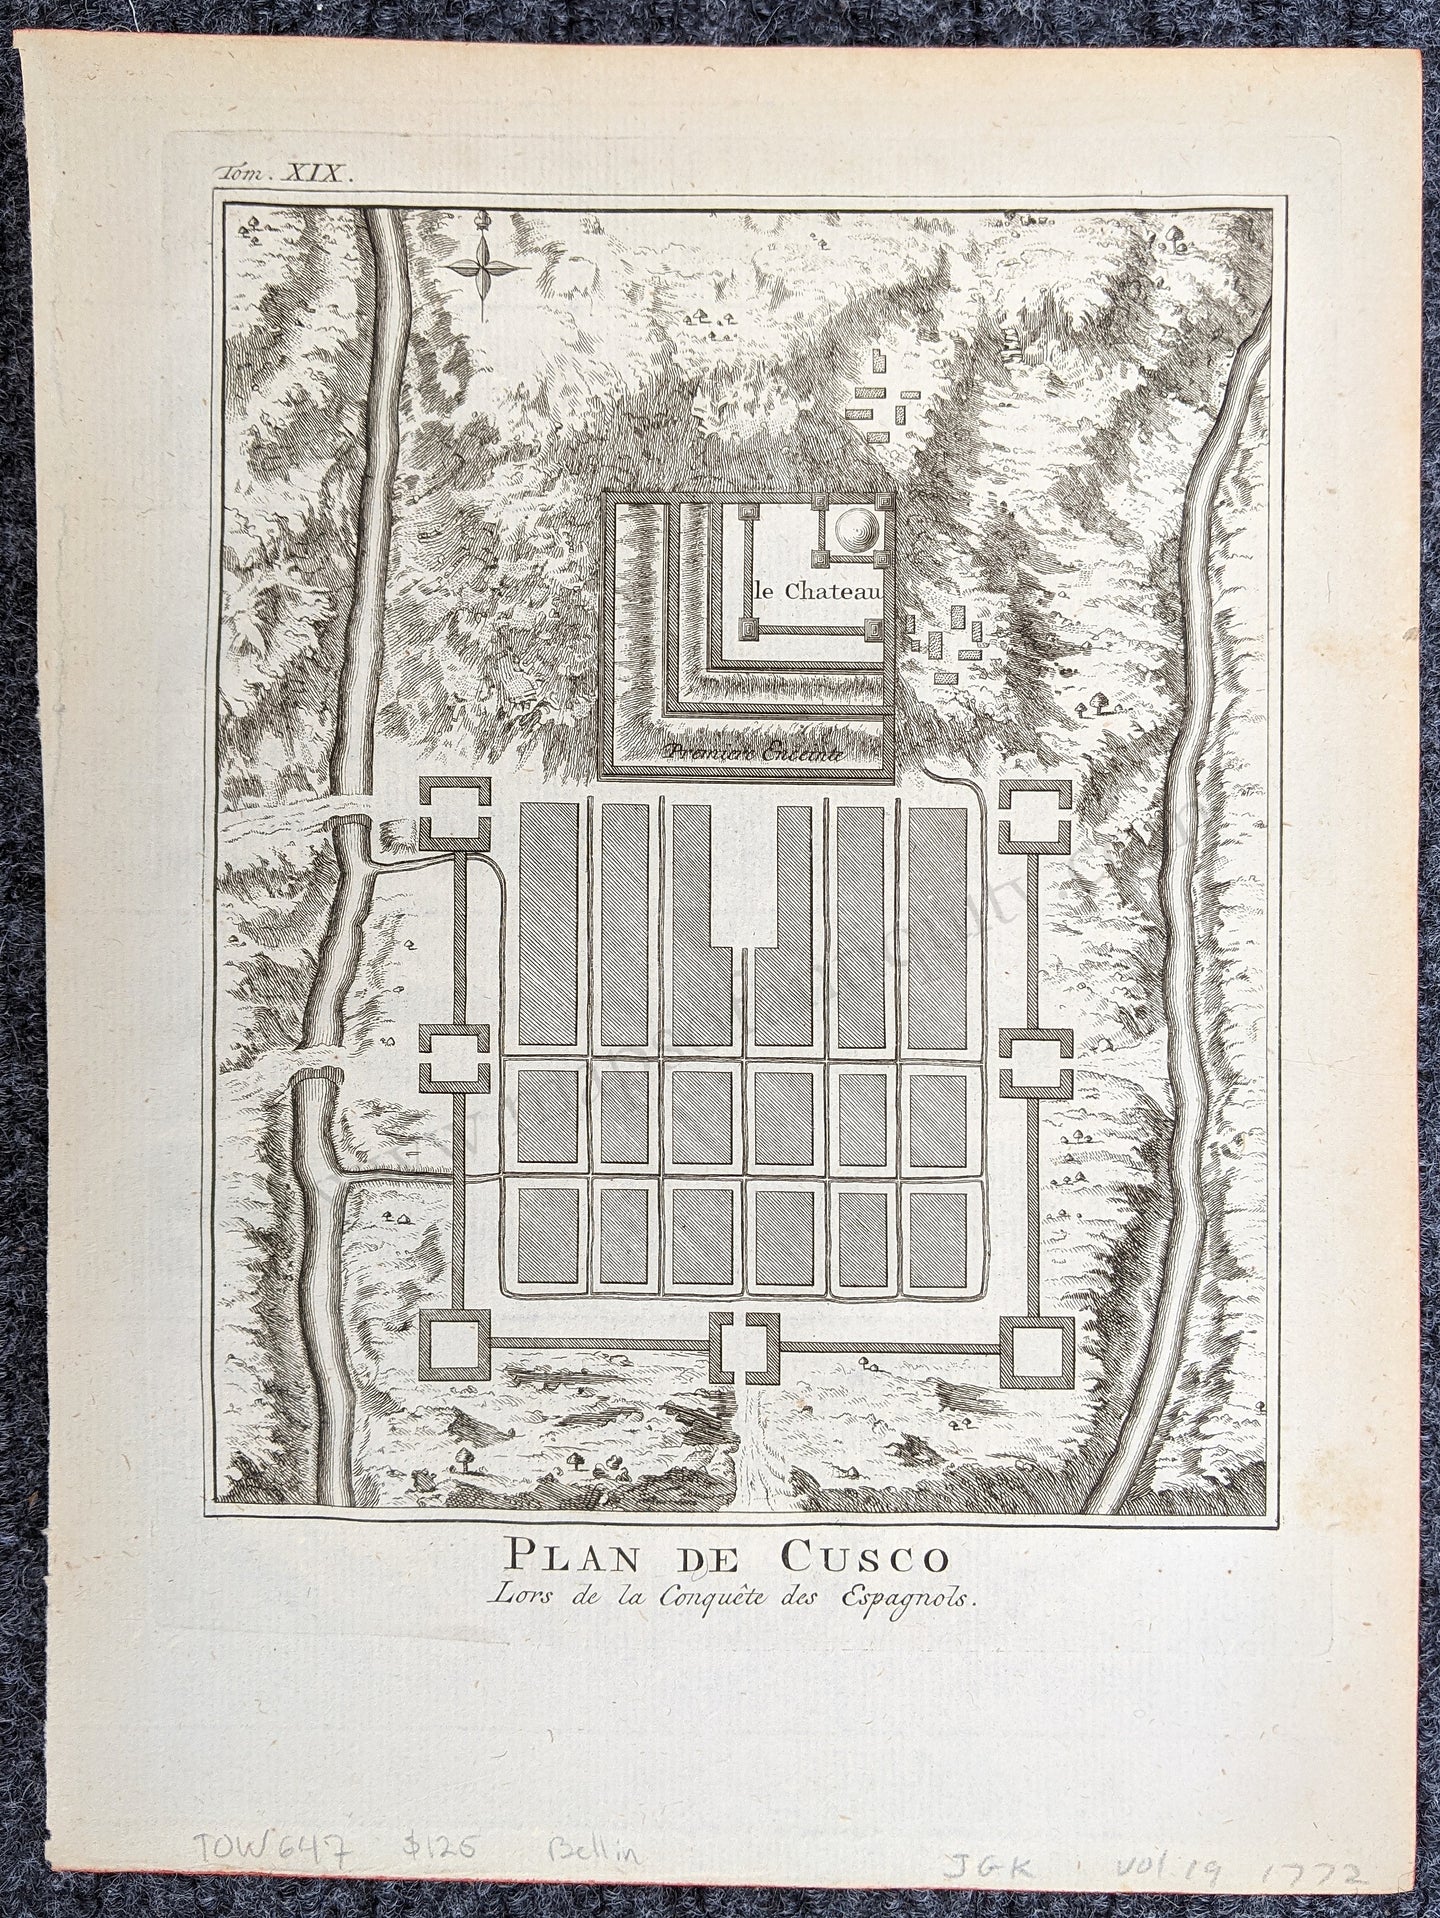 Genuine-Antique-Engraved-Map-Plan-de-Cusco-Lors-de-la-Conquete-des-Espagnols-Towns-and-Cities-South-America-1772-Bellin-Maps-Of-Antiquity-1800s-19th-century